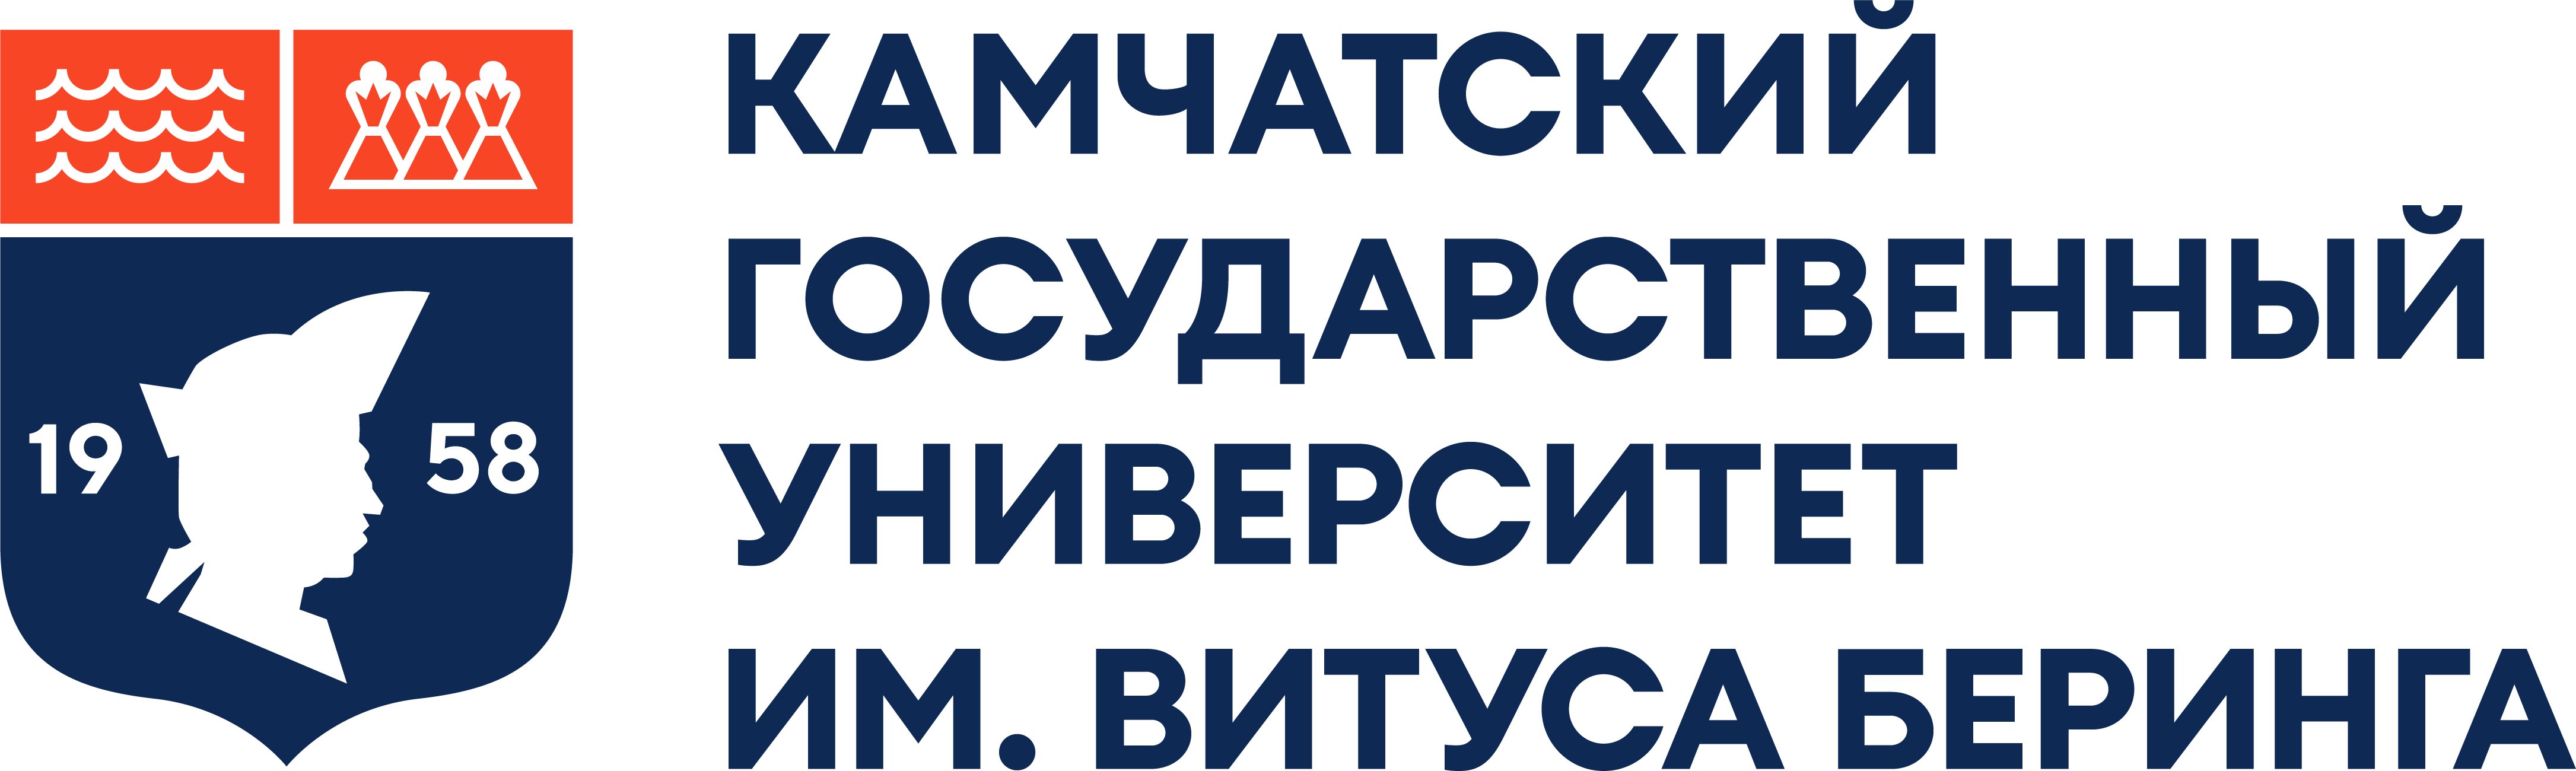 Логотип (полная версия)